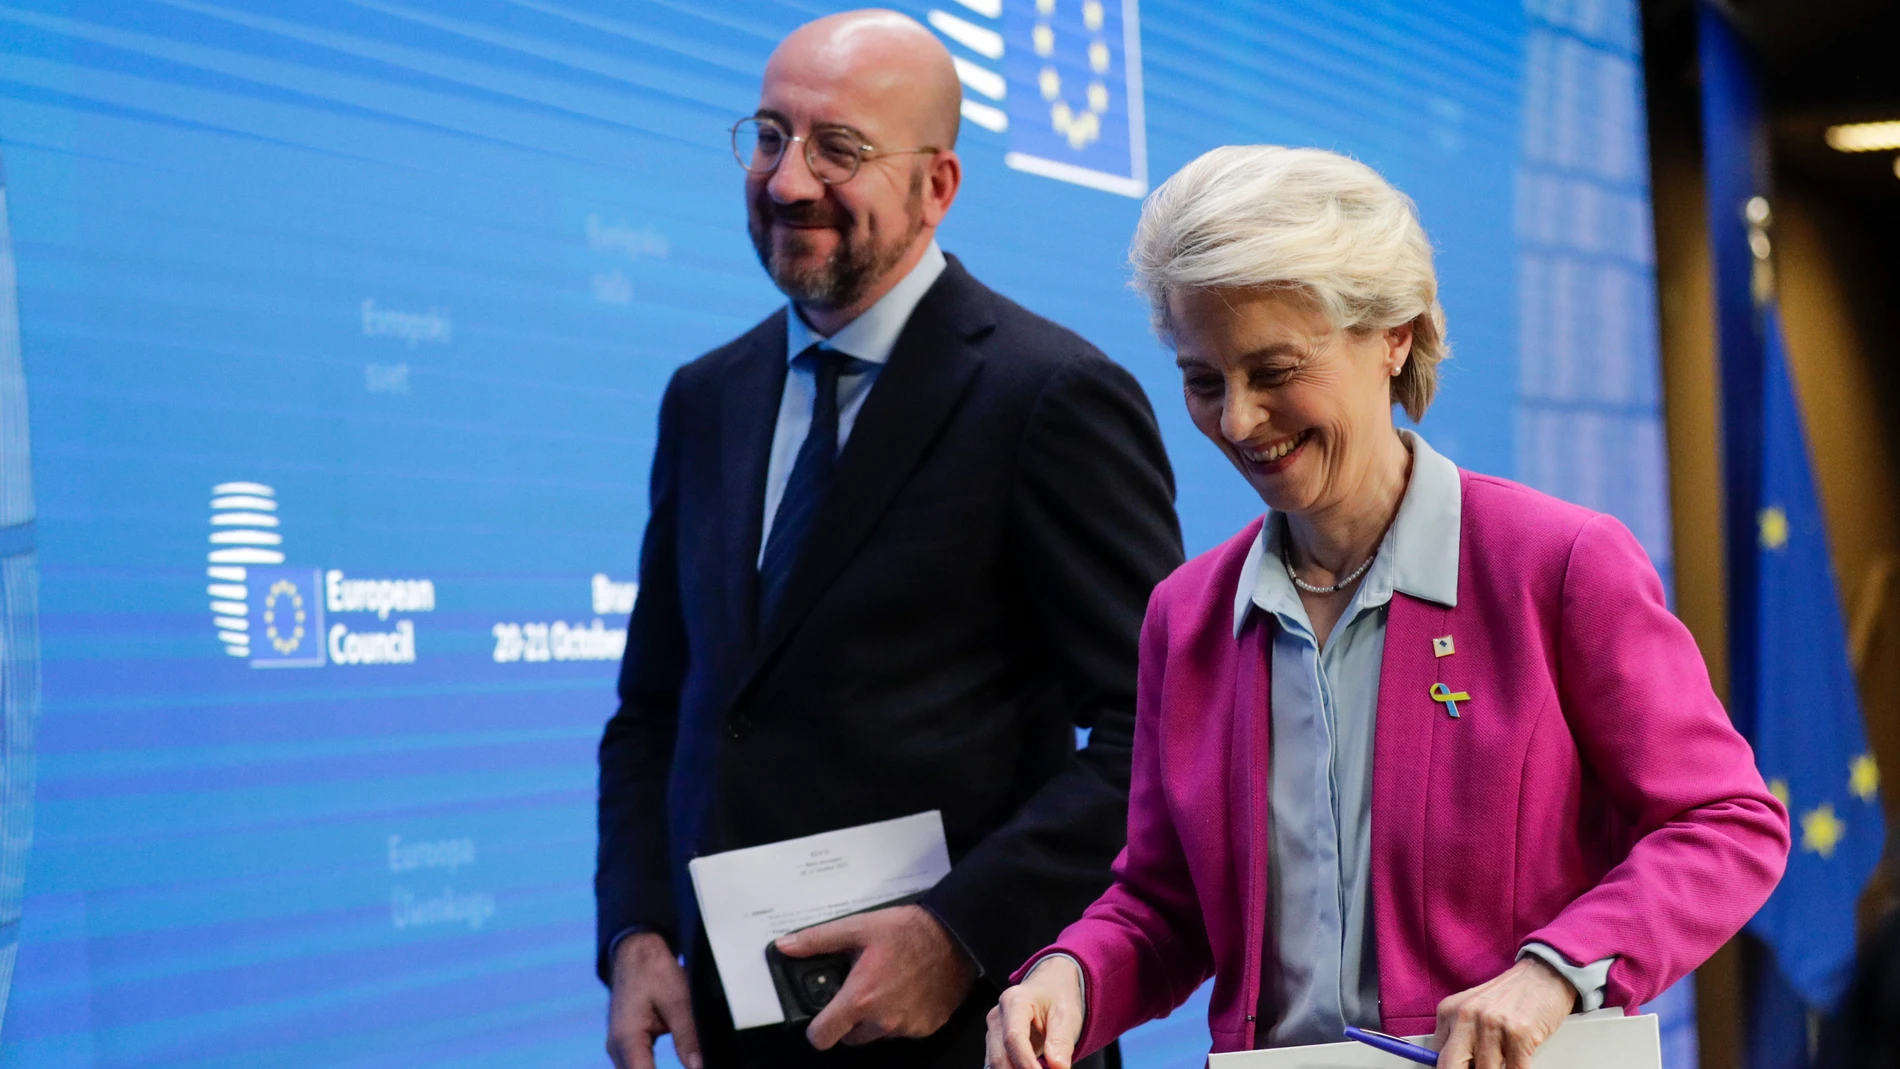 La presidenta de la Comisión Europea, Ursula von der Leyen, y el presidente del Consejo Europeo, Charles Michel, en rueda de prensa tras el primer día de cumbre energética en Bruselas